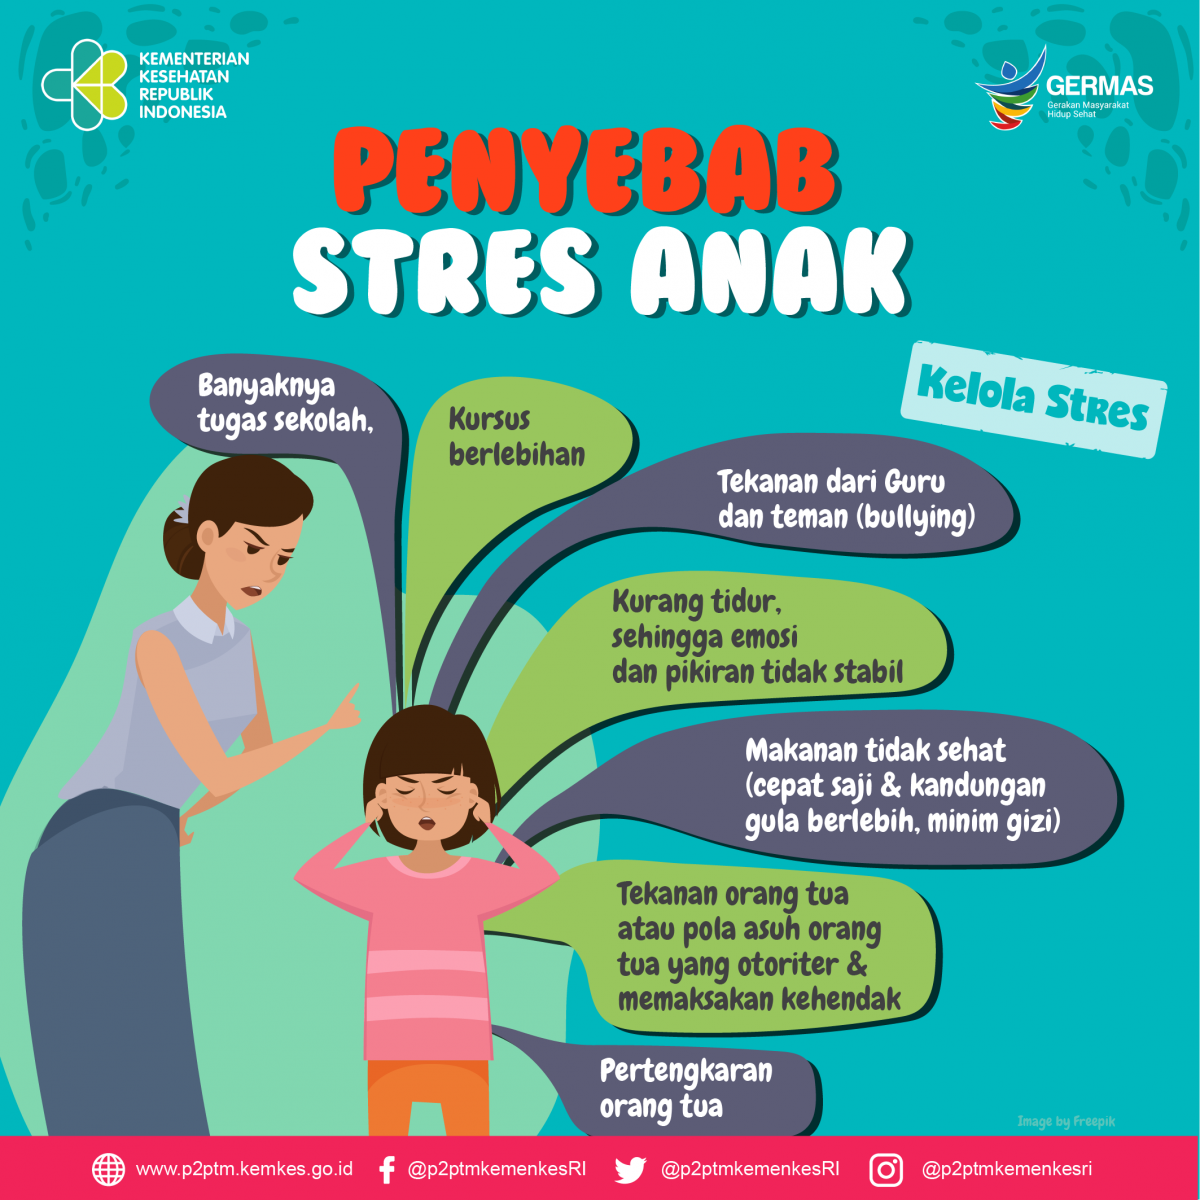 Apa saja yang menyebabkan stres pada Anak?